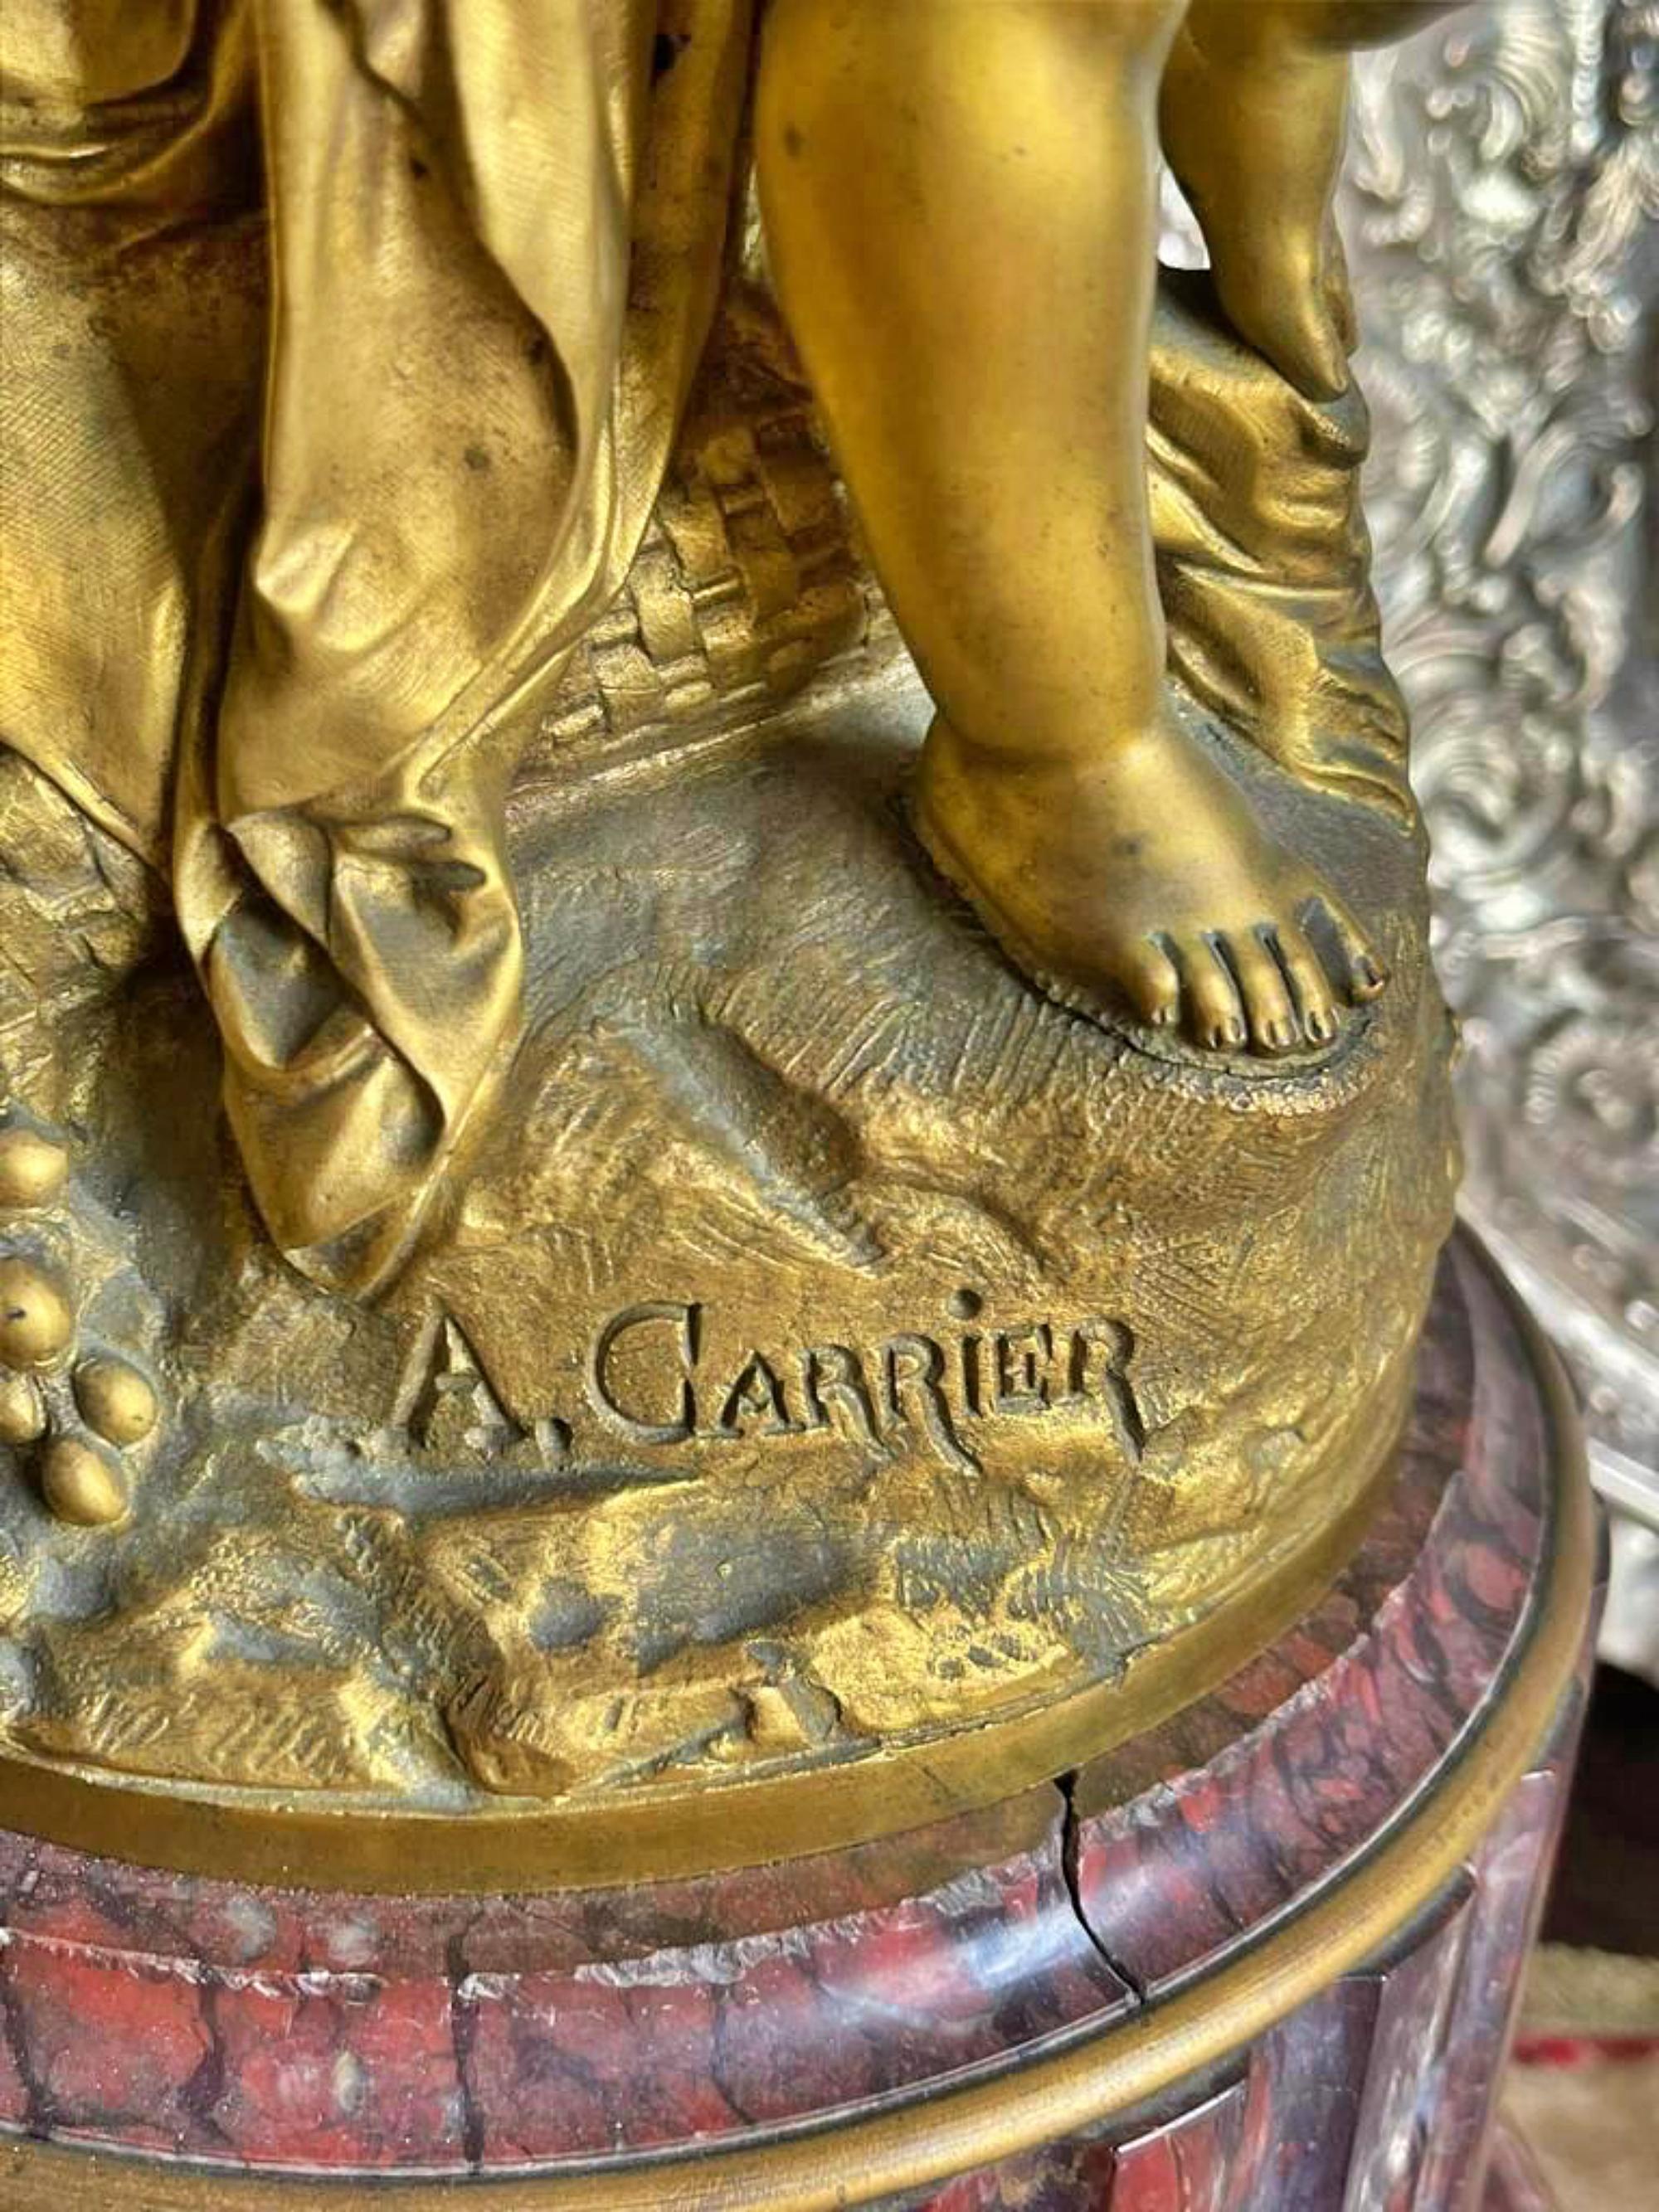 Albert Carrier-Belleuse (1824-1887)

Paar französischer fünfflammiger Kandelaber aus dem 19. Jahrhundert.
aus vergoldeter Bronze. 
Dekoriert mit weiblichen Figuren, auf einem Marmorsockel. 
Unterschrieben. 
Maße: Höhe: (insgesamt) 98 cm.
perfekter